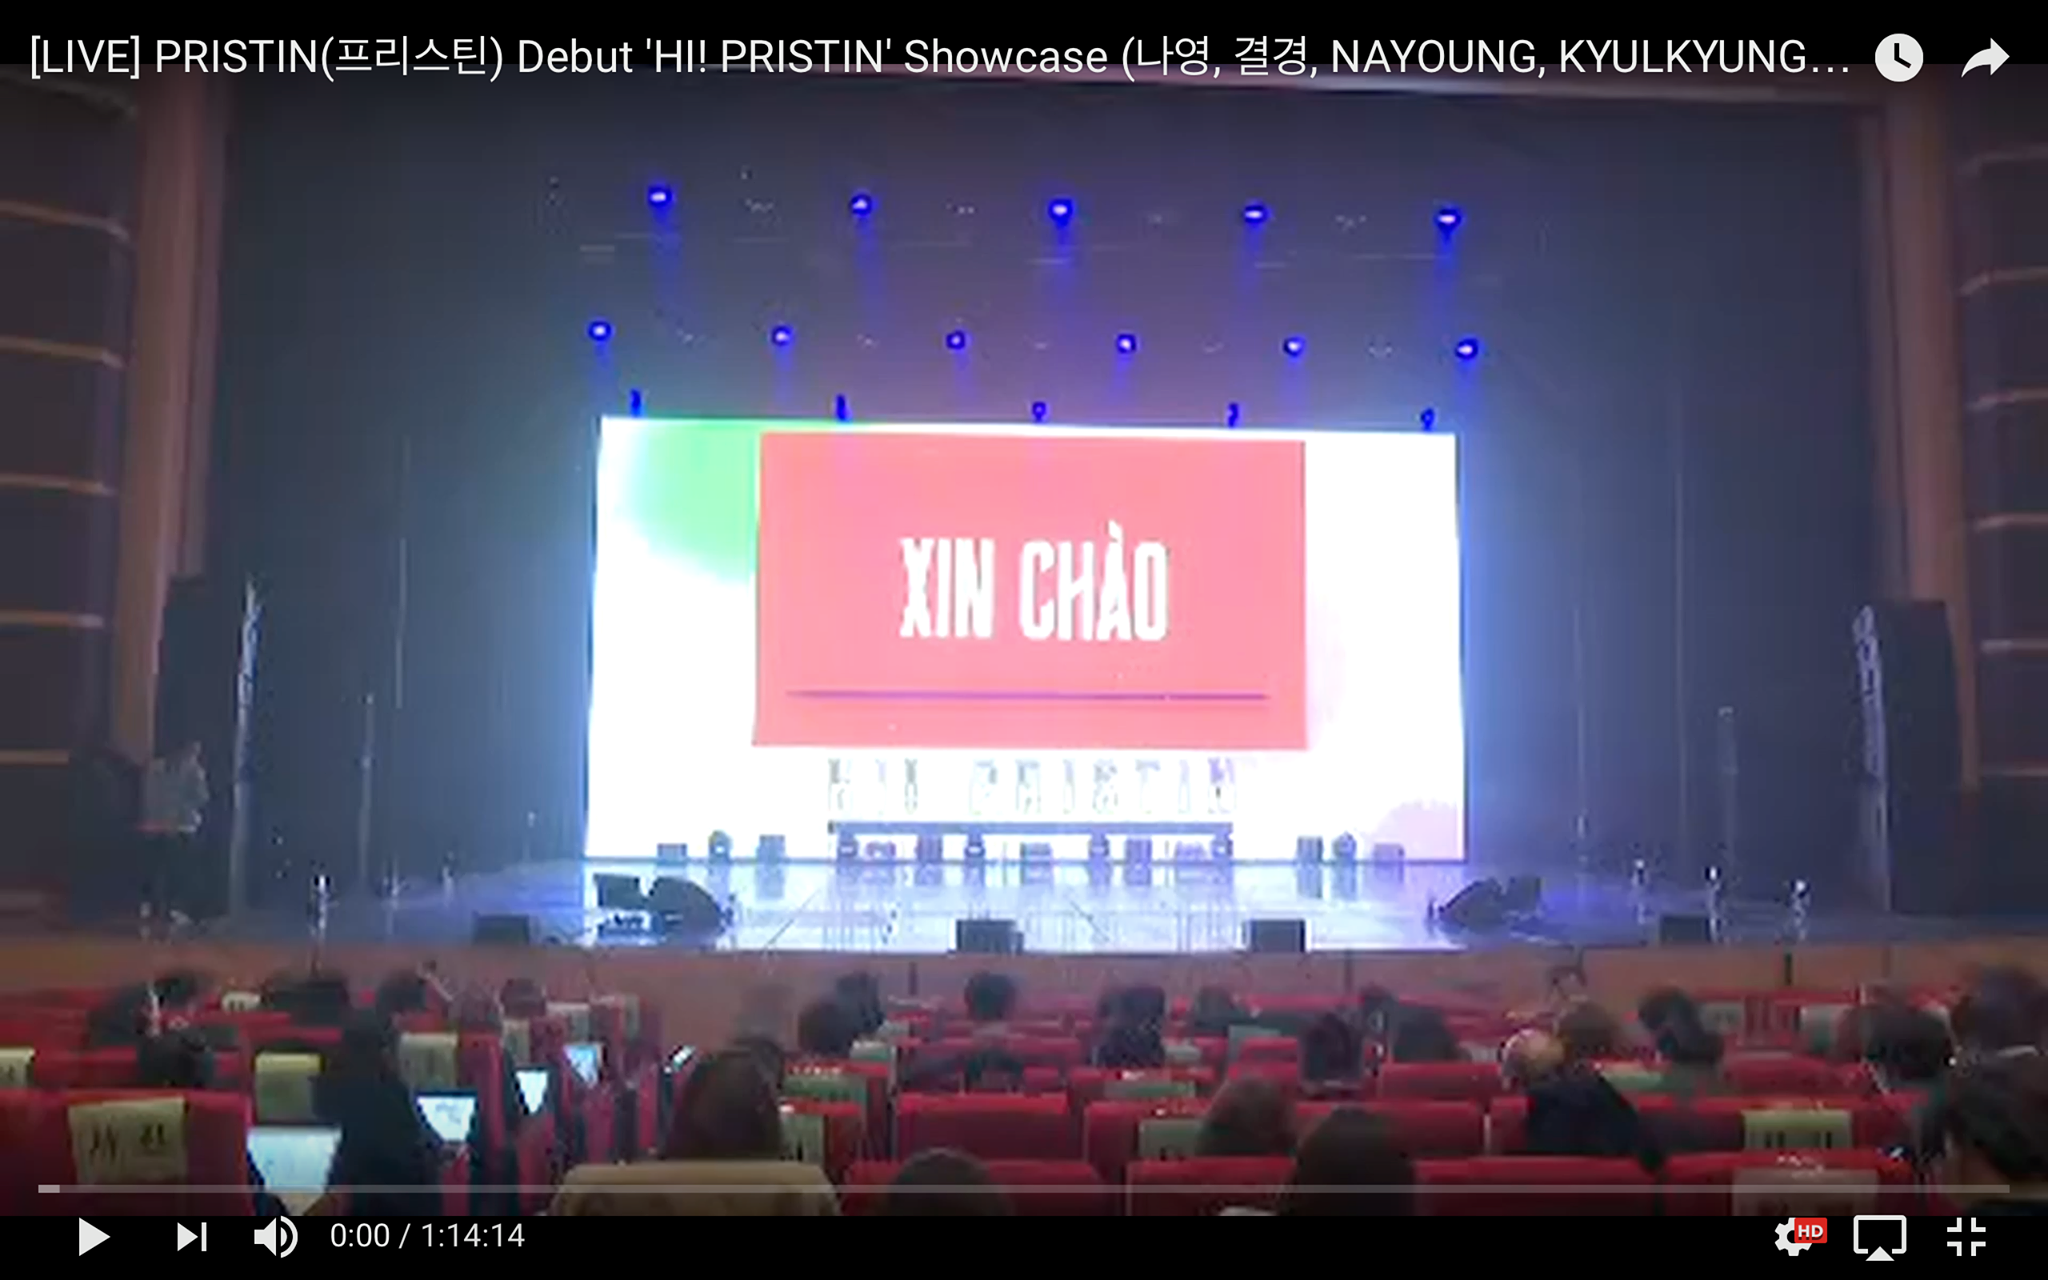 
Trong phần mở màn cho showcase ra mắt album đầu tay của nhóm nhạc tân binh Pristin cũng đã khiến nhiều fan Việt "sửng sốt" và "phấn khích" khi nhìn thấy dòng chữ "Xin chào" được hiện lên màn hình. 